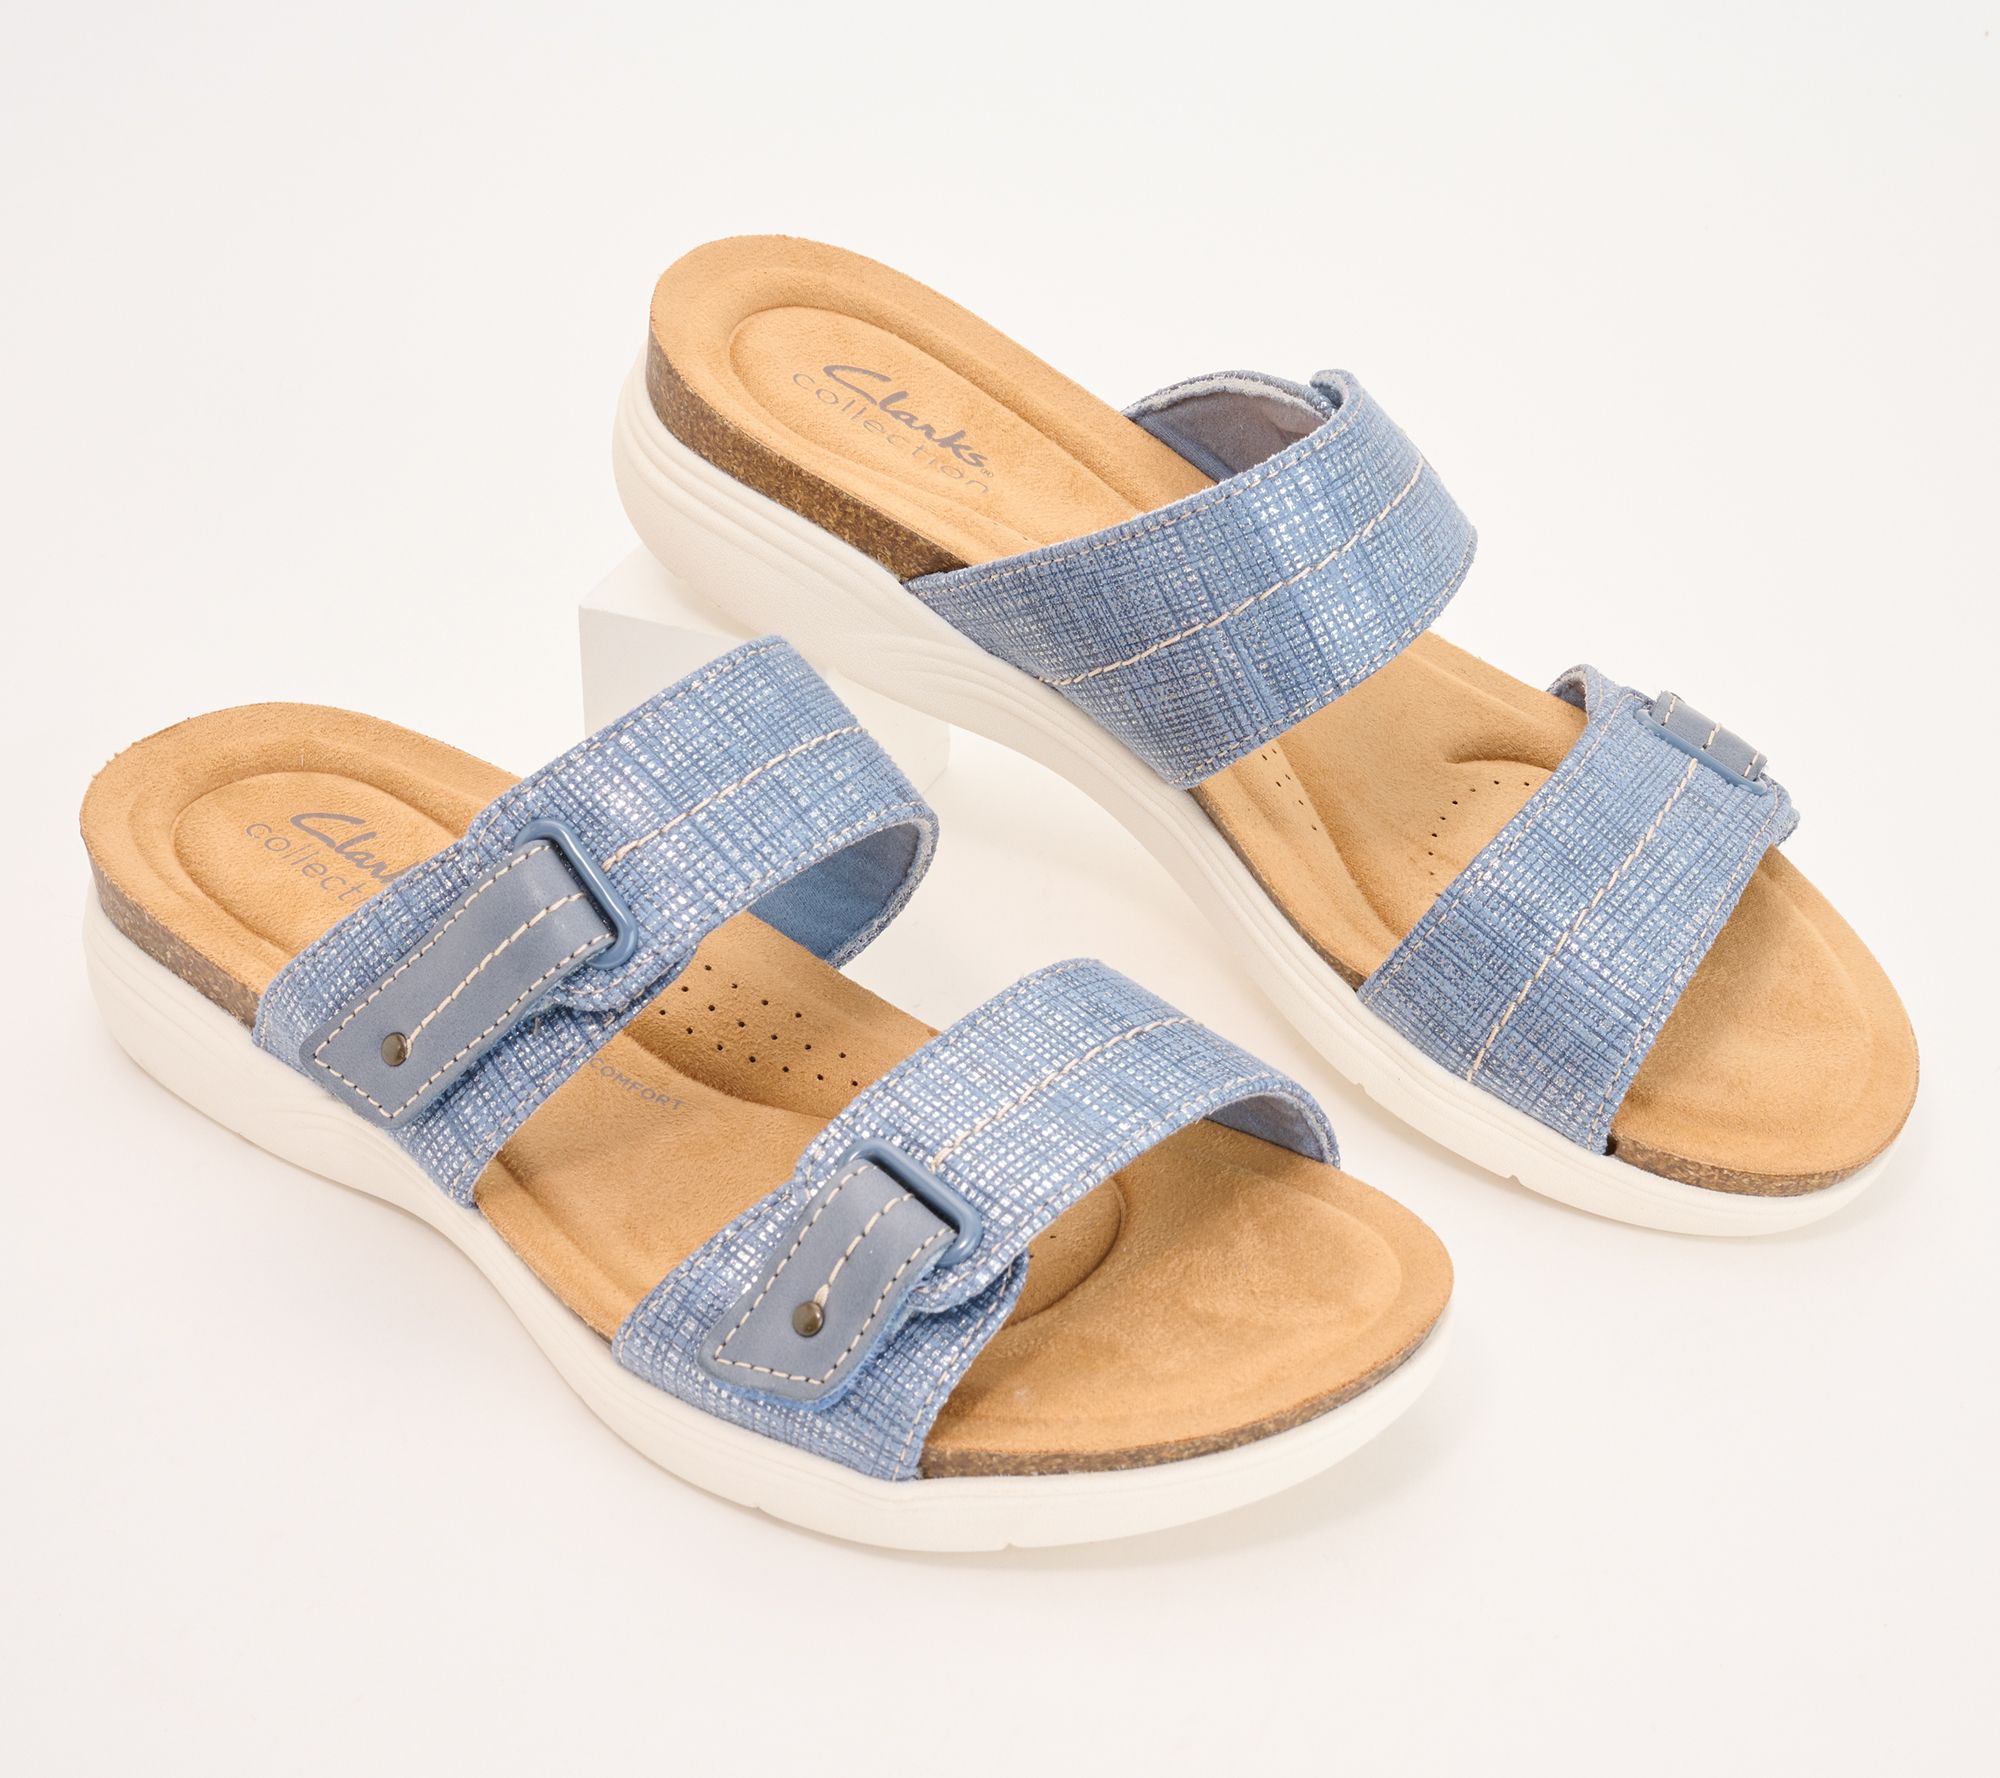 Clarks Collection Slide Sandals - Dusk - QVC.com